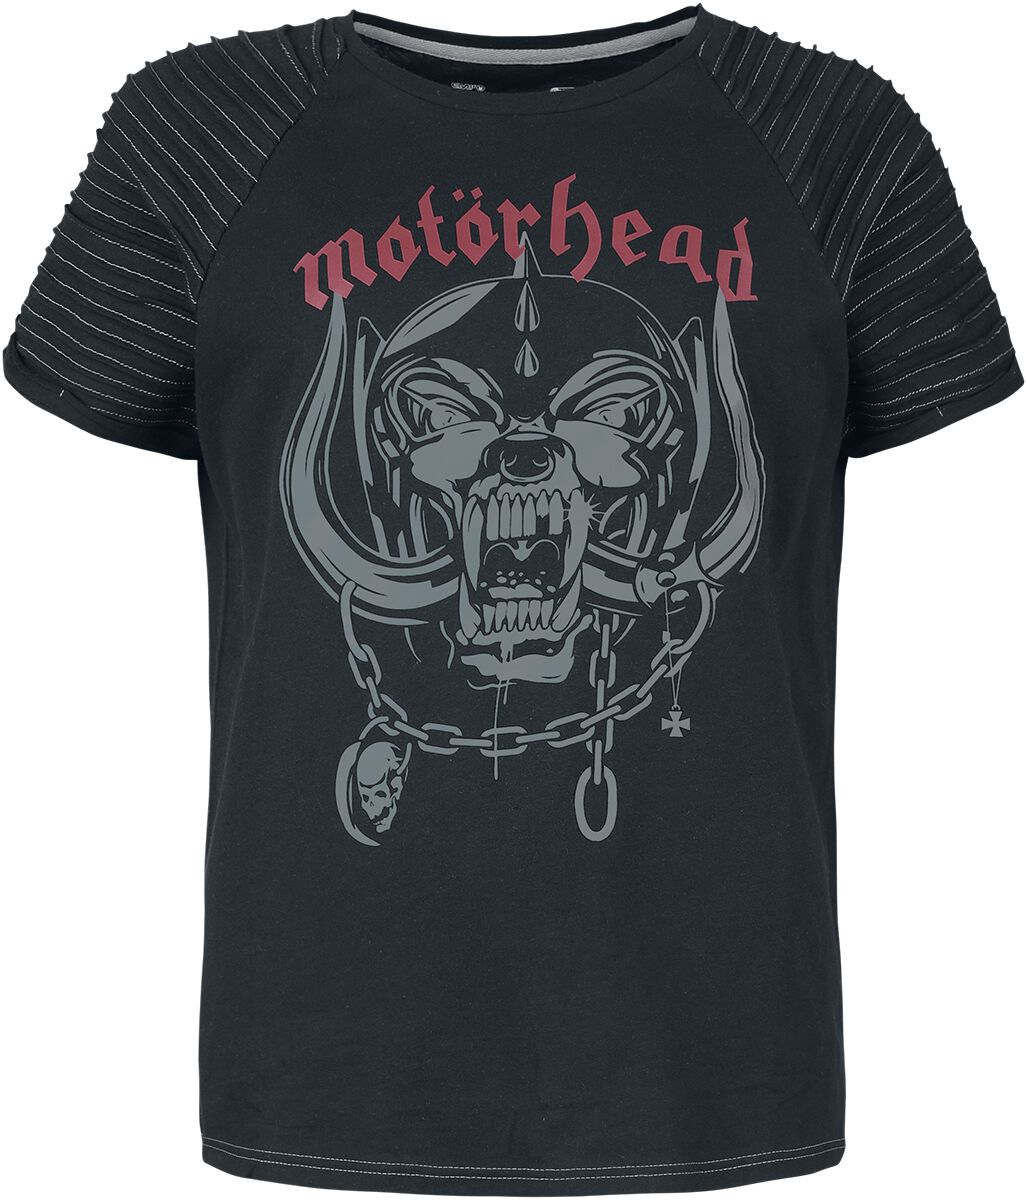 Motörhead T-Shirt - EMP Signature Collection - S - für Damen - Größe S - schwarz  - EMP exklusives Merchandise!